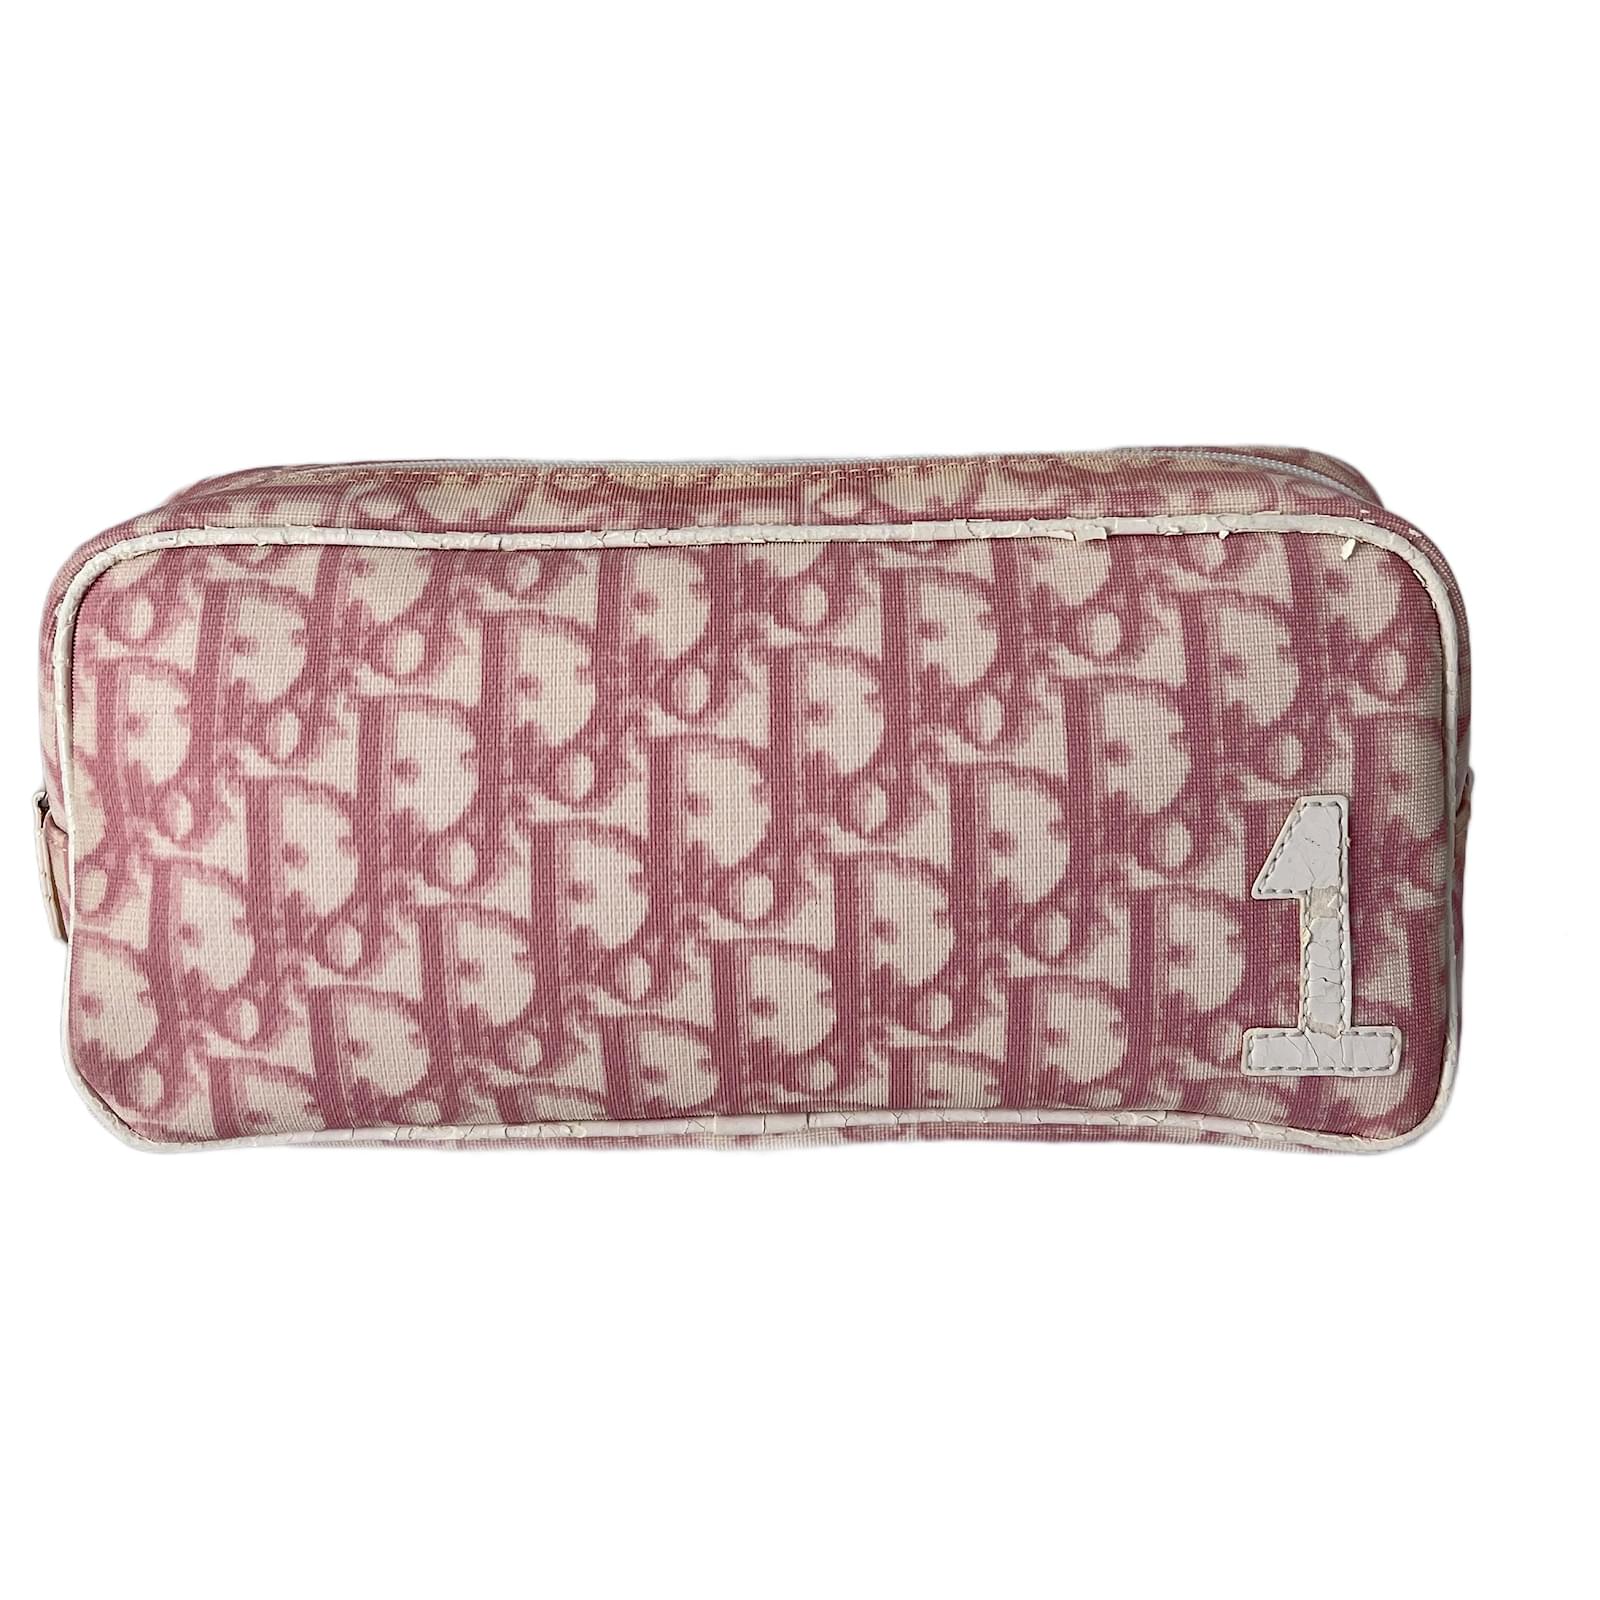 Buy CHRISTIAN DIOR Vintage Bag 90s French Designer Pink Handbag Purse  Authentic Dior Monogram Girly Shoulder Bag Online in India - Etsy